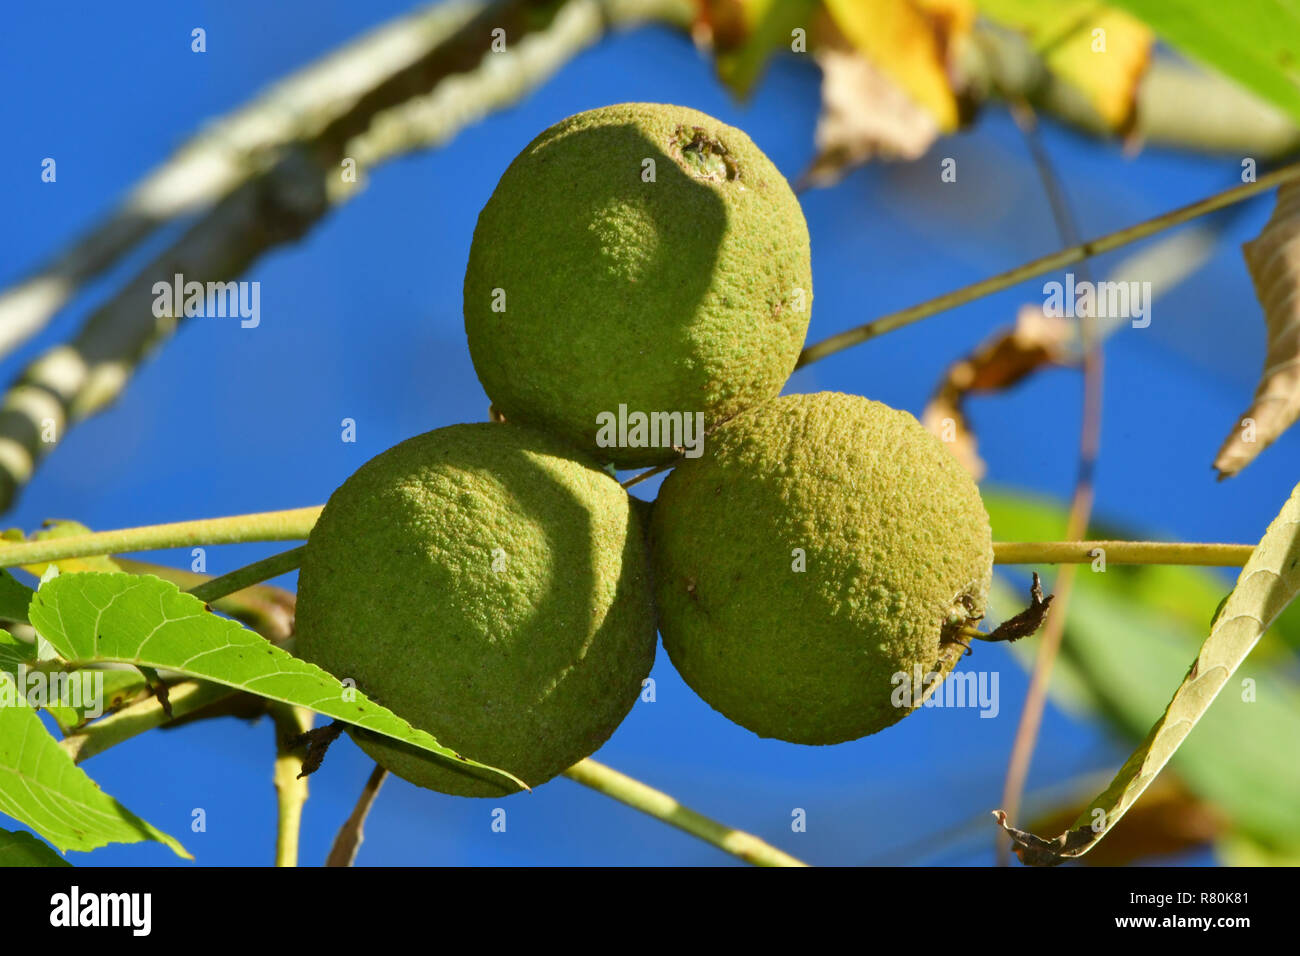 Le noyer noir, le noyer américain (Juglans nigra). Fruit non mûr sur un arbre, vu contre le ciel bleu. Allemagne Banque D'Images